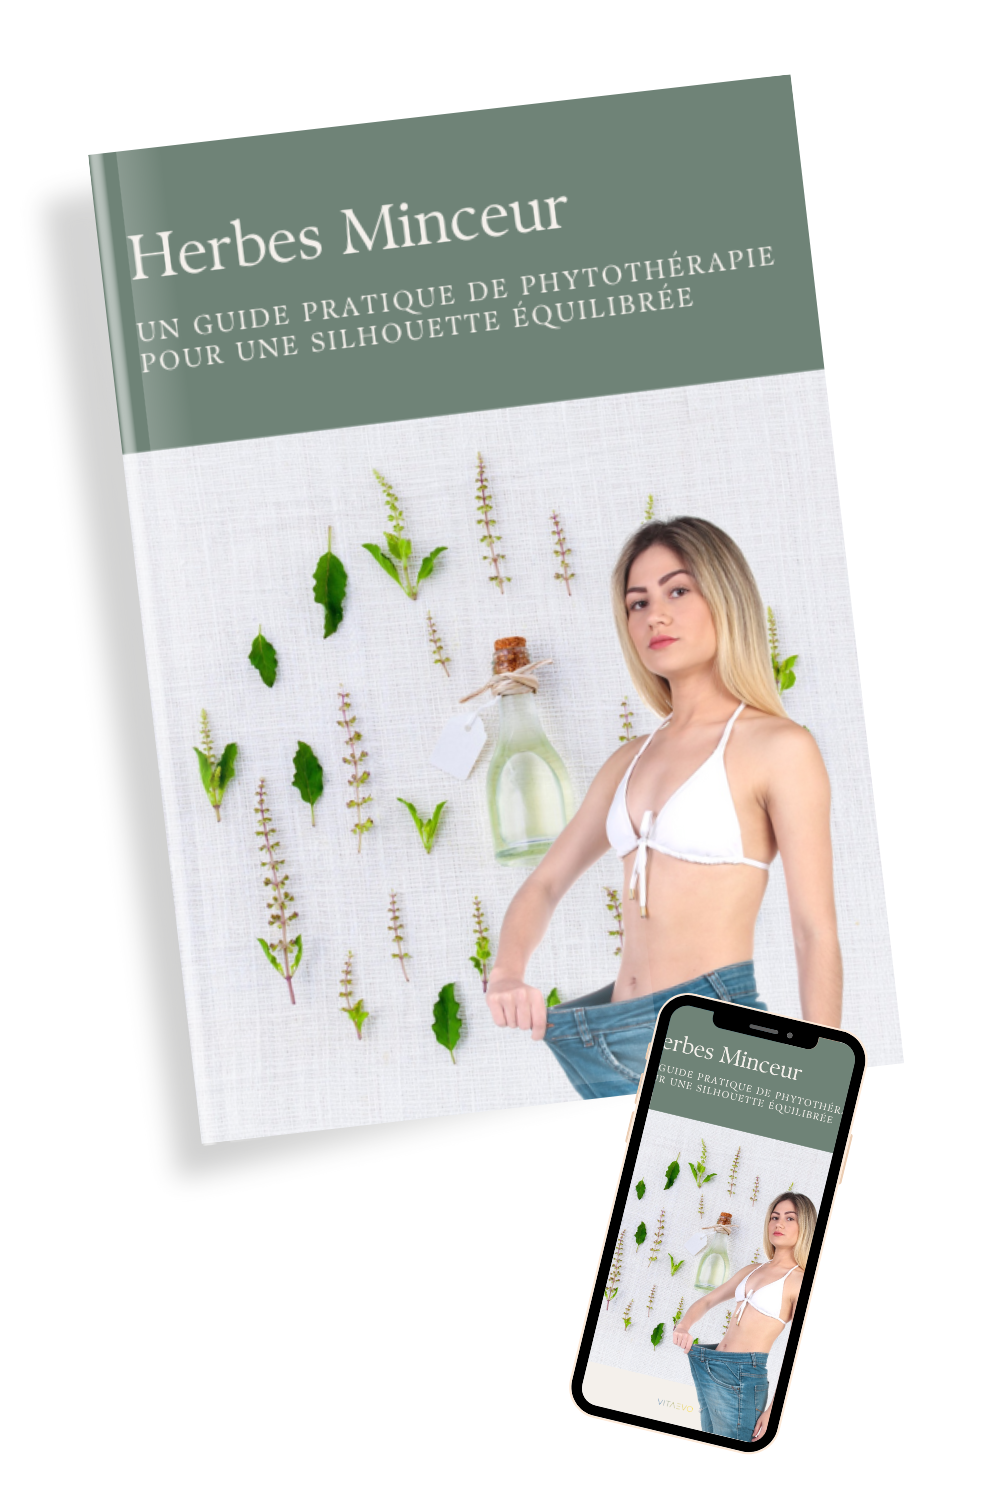 HERBES MINCEUR - Un Guide Pratique de Phytothérapie pour une Silhouette Équilibrée